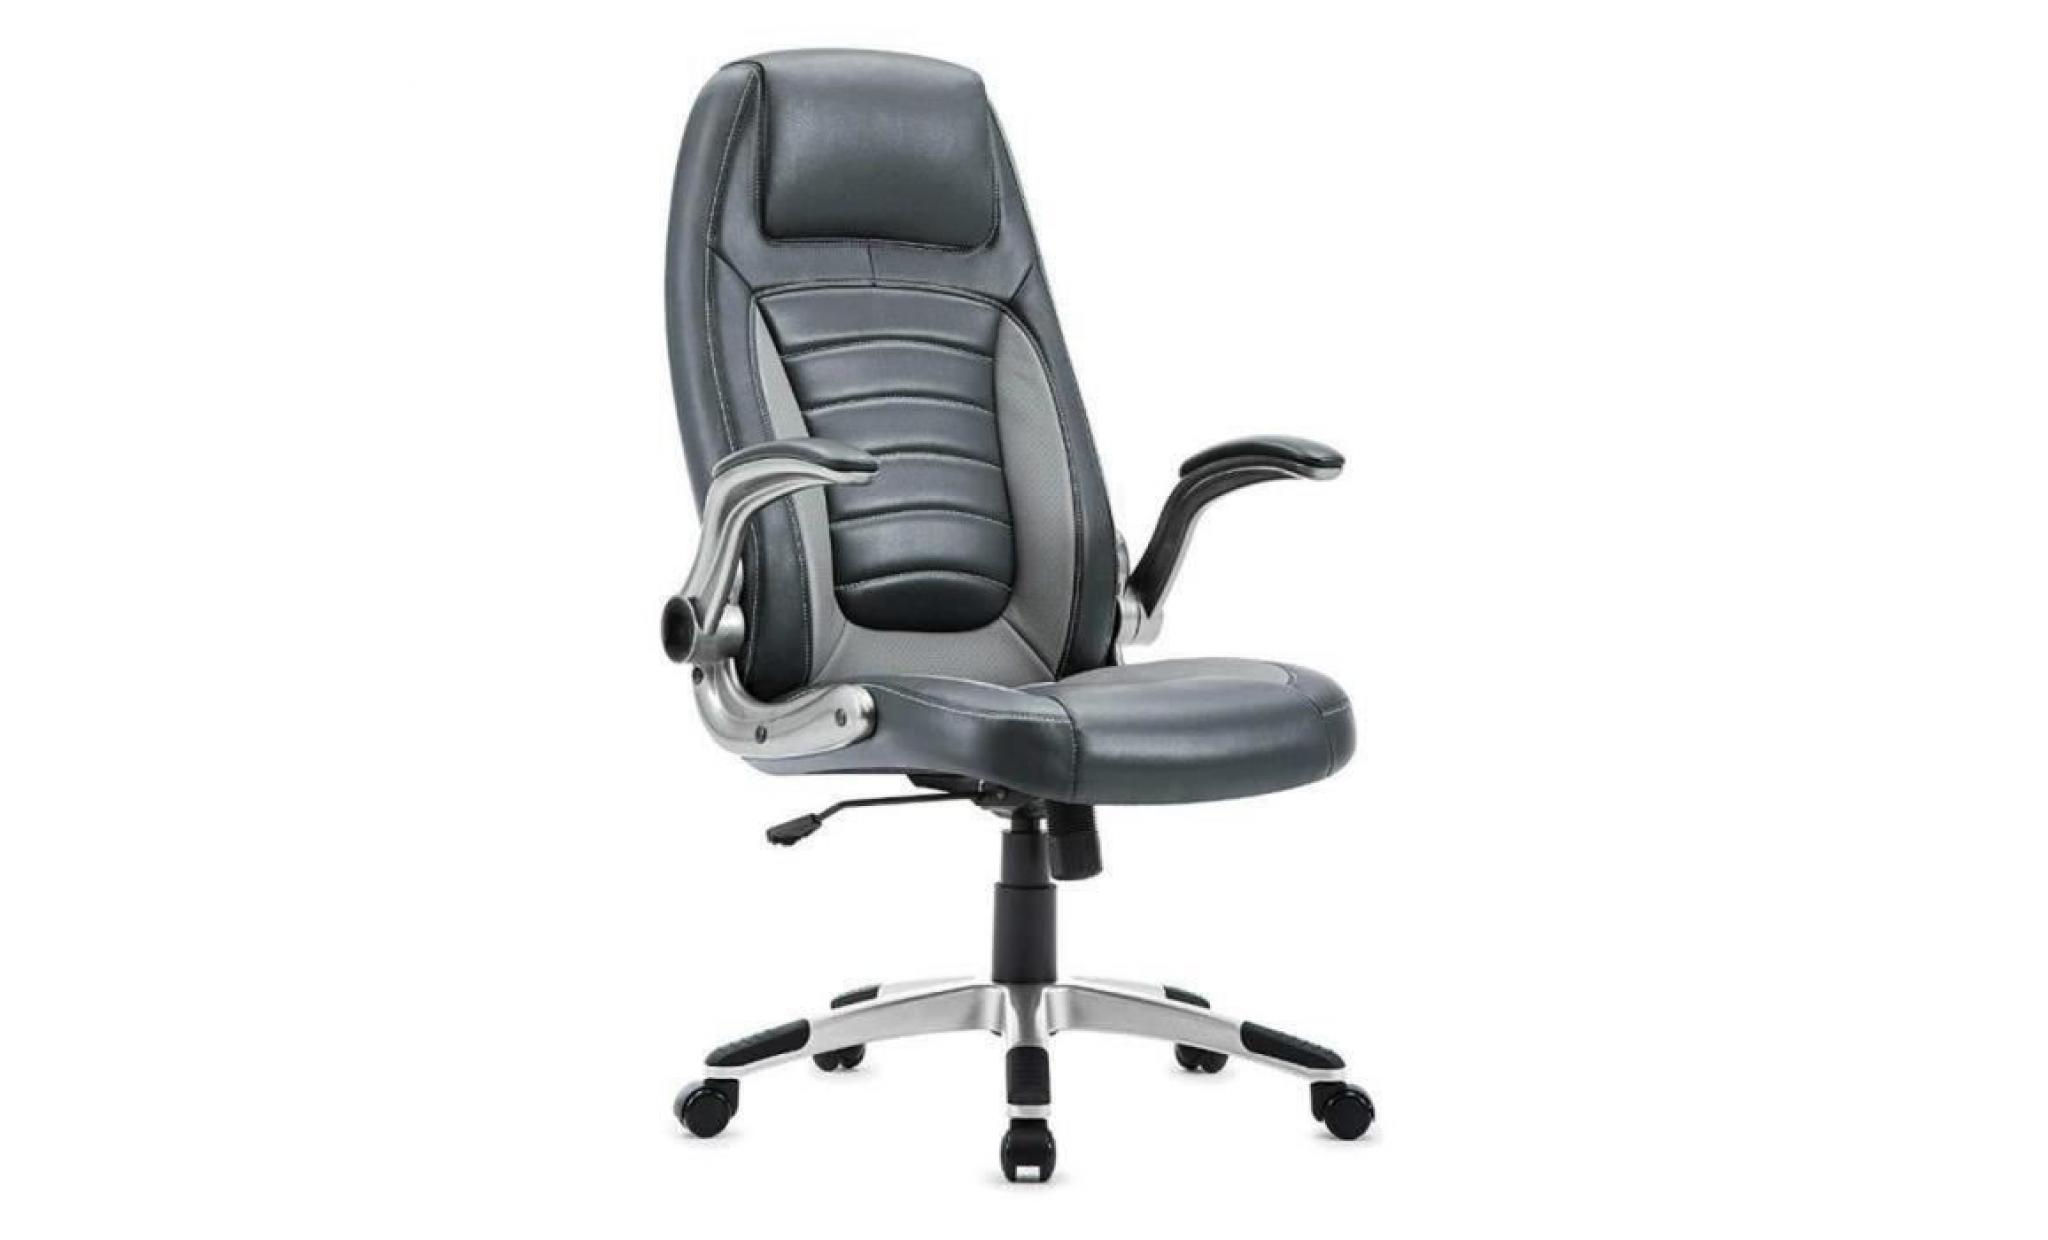 chaise de bureau   fauteuil gamer   siège pu hauteur réglable   chaise d'ordinateur   rouge   intimate wm heart pas cher